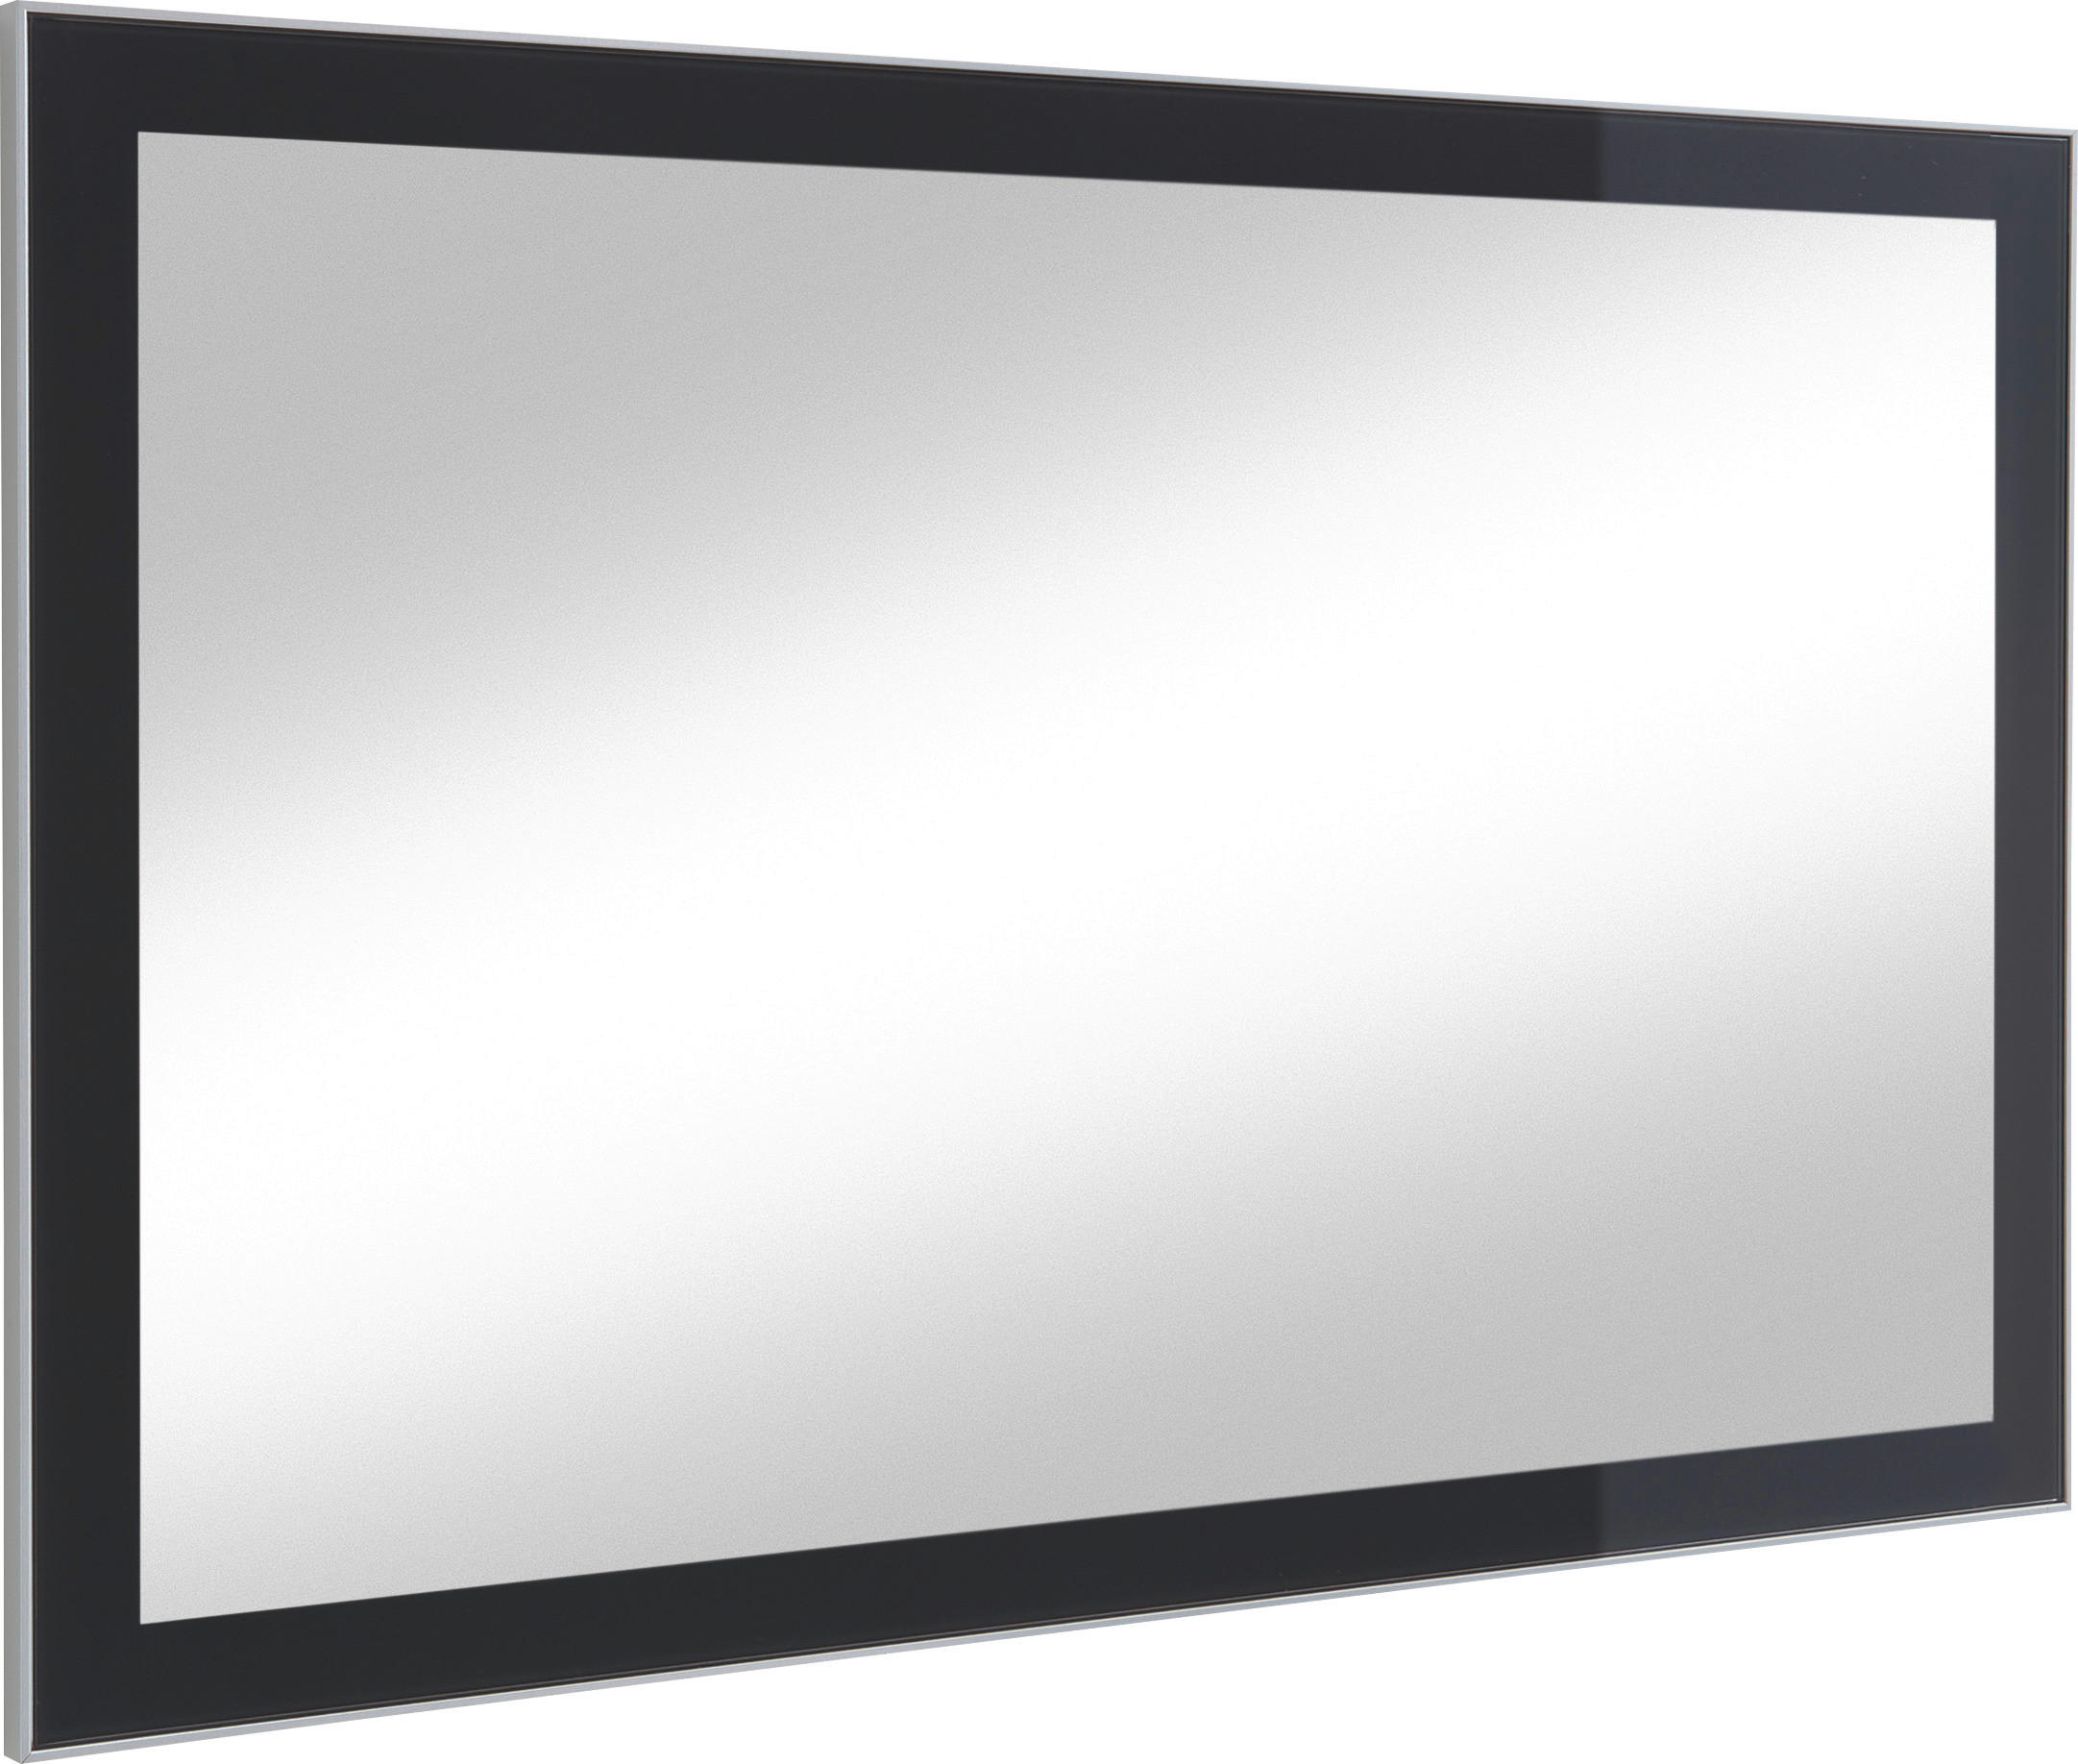 Design Spiegel mit Rahmen aus Glas - 90x120 cm bzw 120x90 cm - Liberty